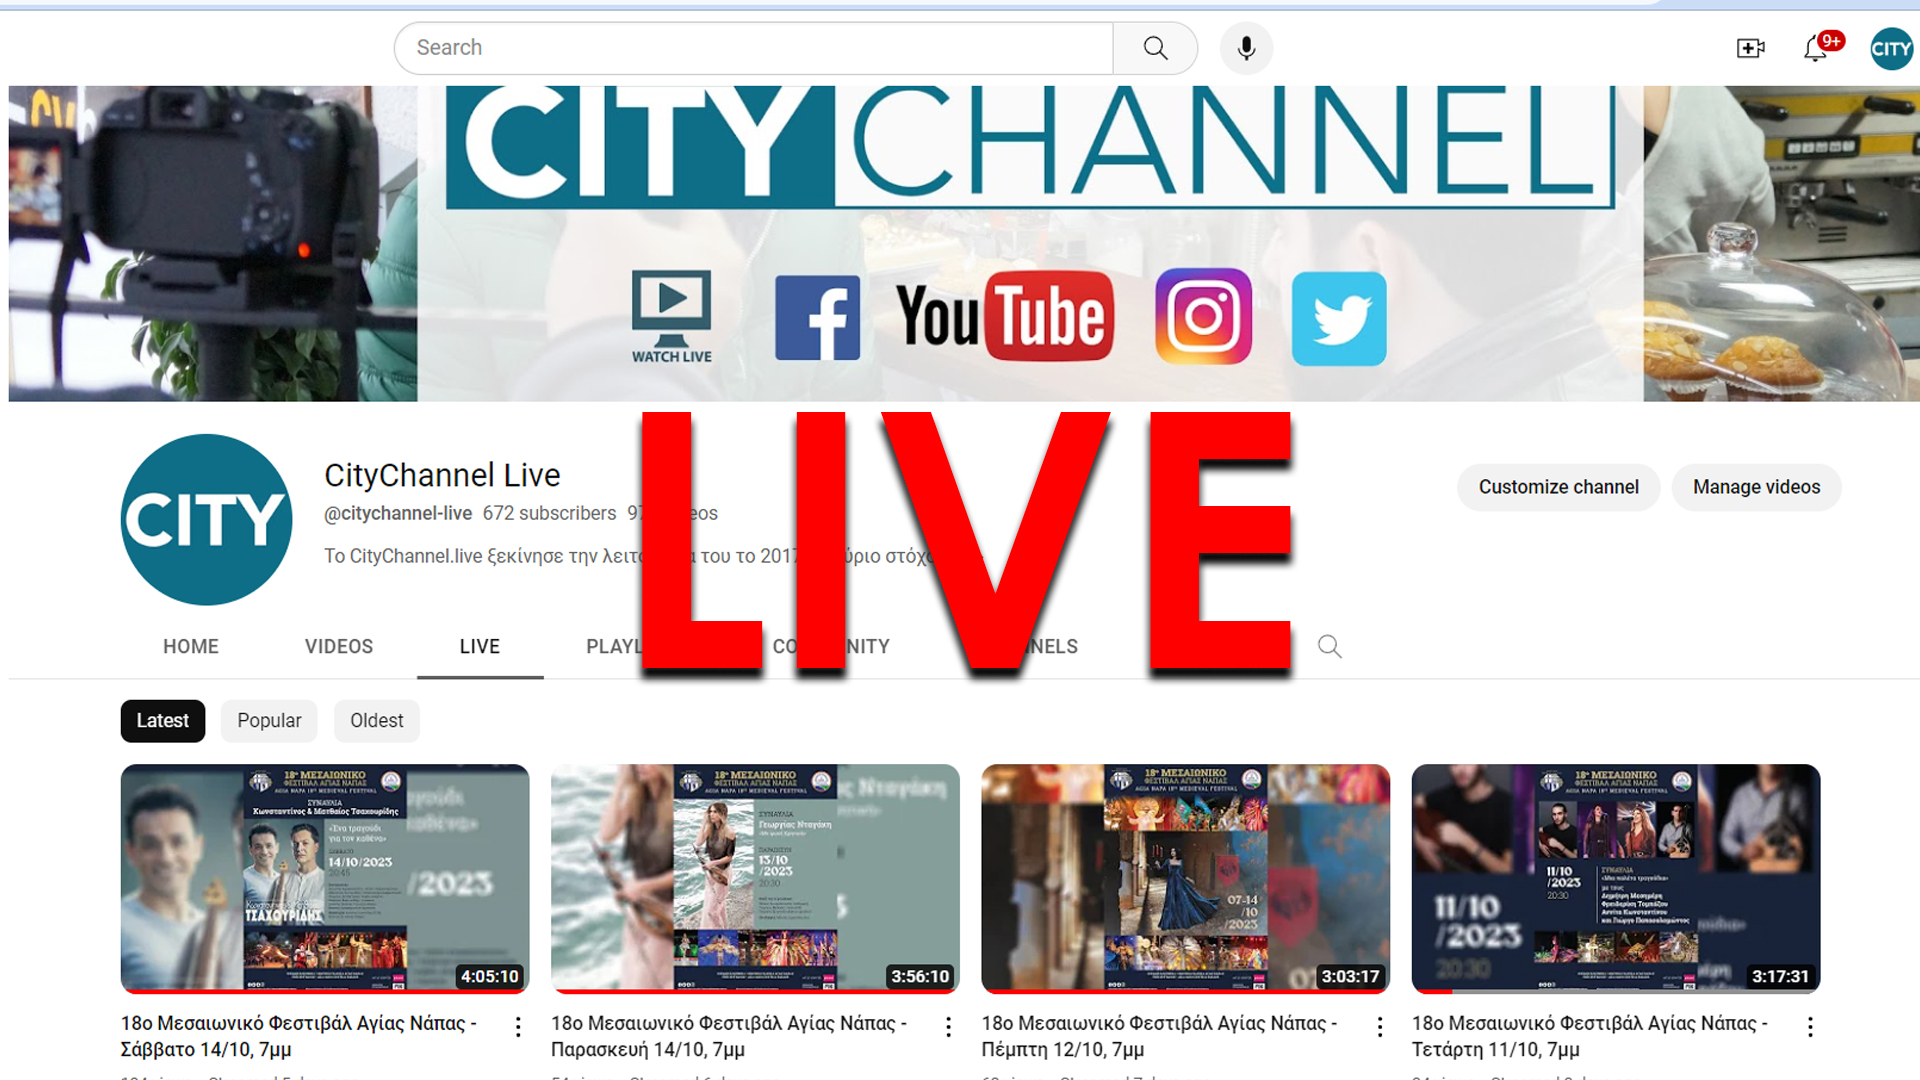 Ζωντανή μετάδοση του προγράμματος του CityChannel ολόκληρο το 24ωρο!